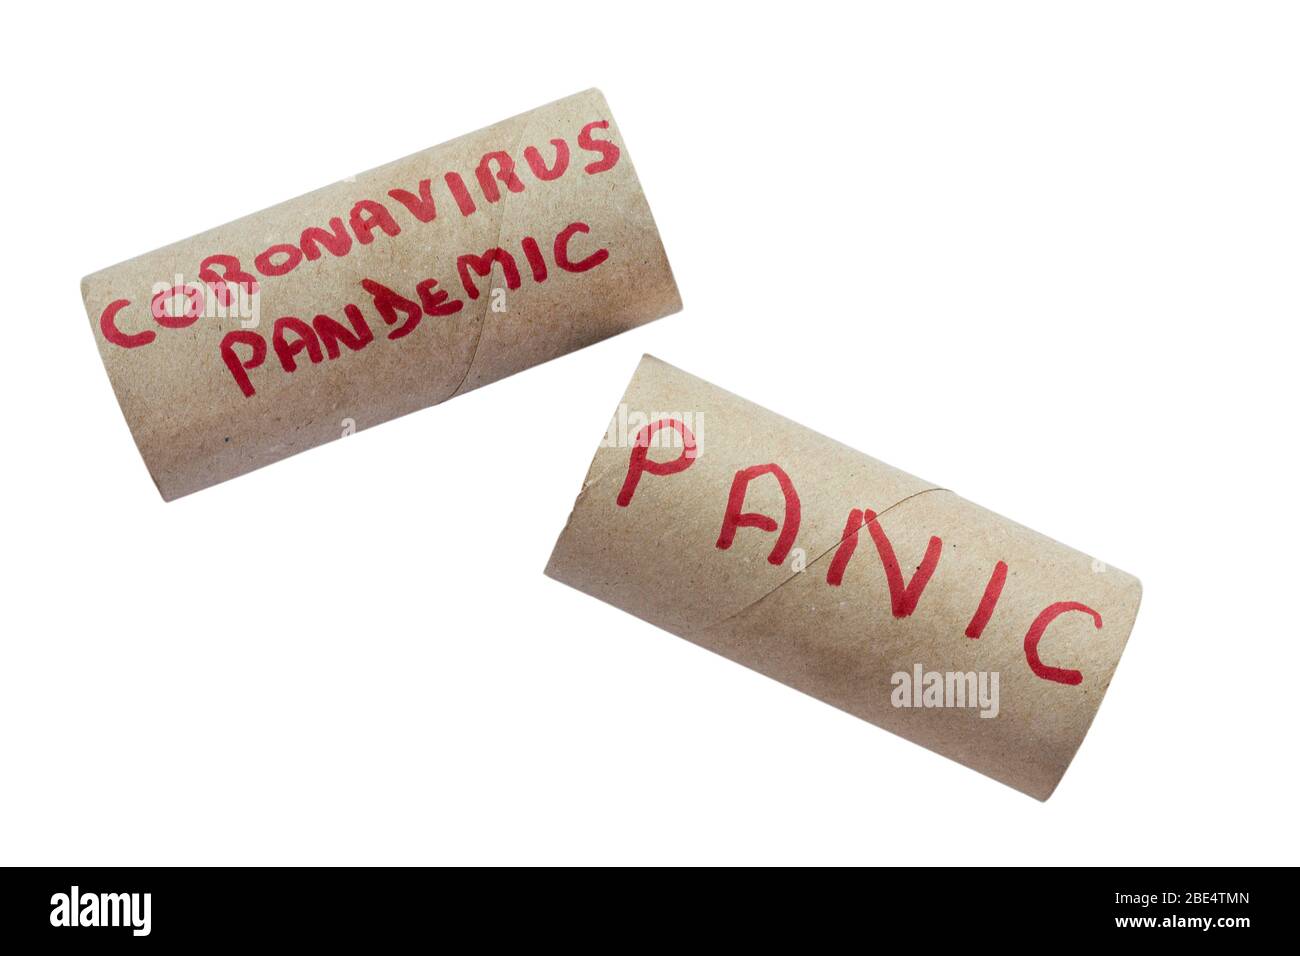 Coronavirus-Pandemie und Panik auf Toilettenpapierrohren geschrieben - Konzept der Panik Kauf von Toilettenrollen als Menschen Panik Kaufen Sie wichtige Artikel in Großbritannien Stockfoto